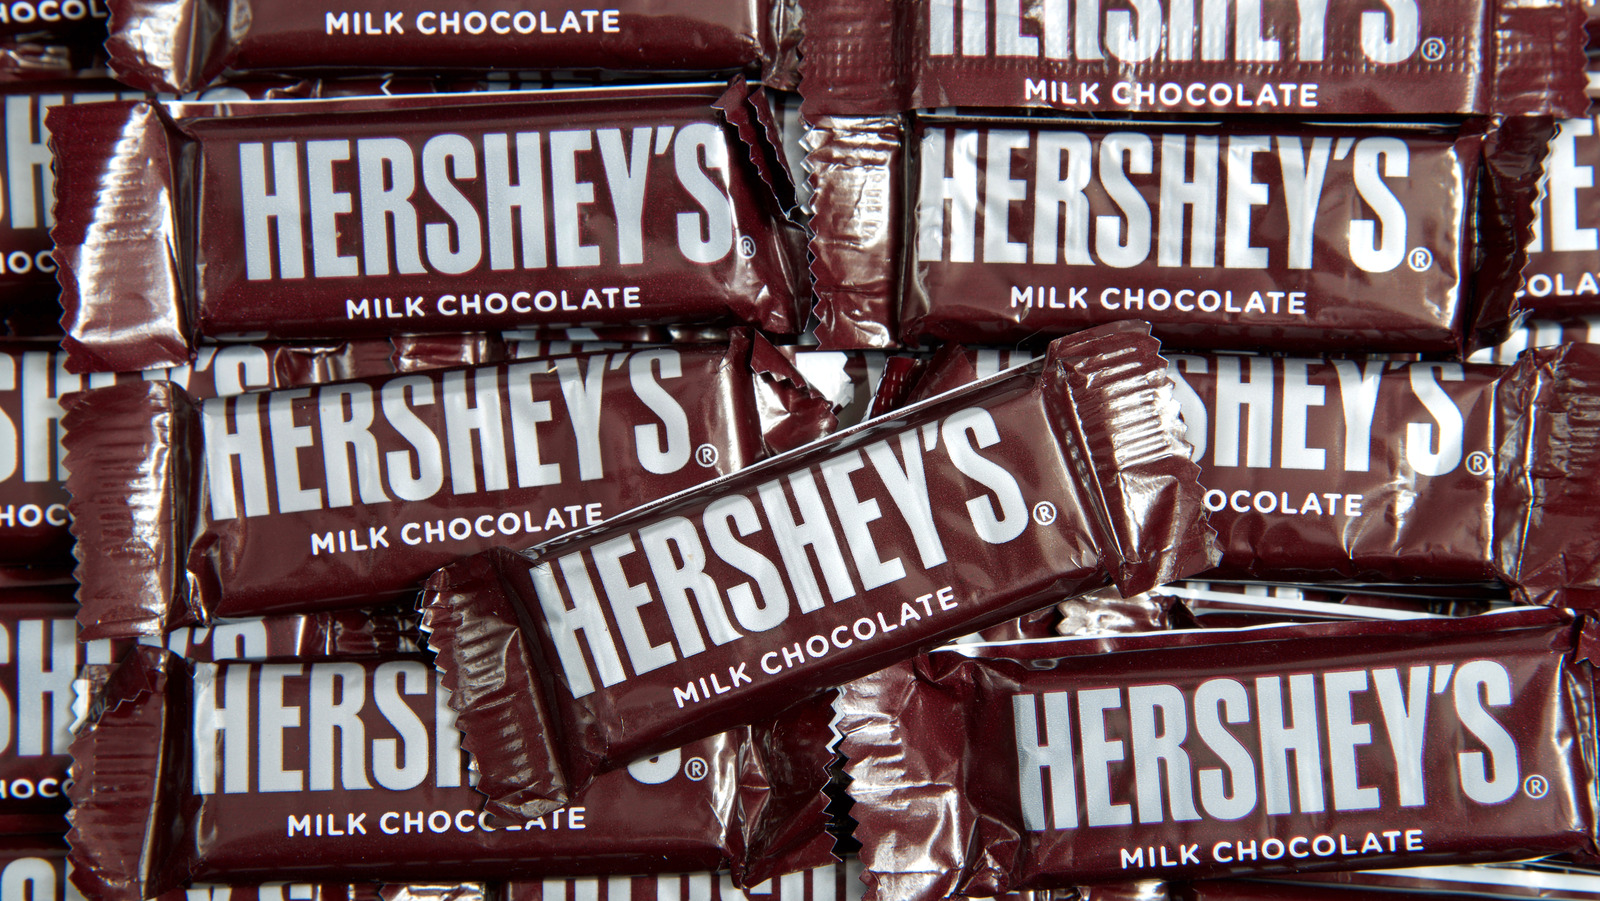 Hershey, Kitchen, Hersheys Chocolate Drink Maker New